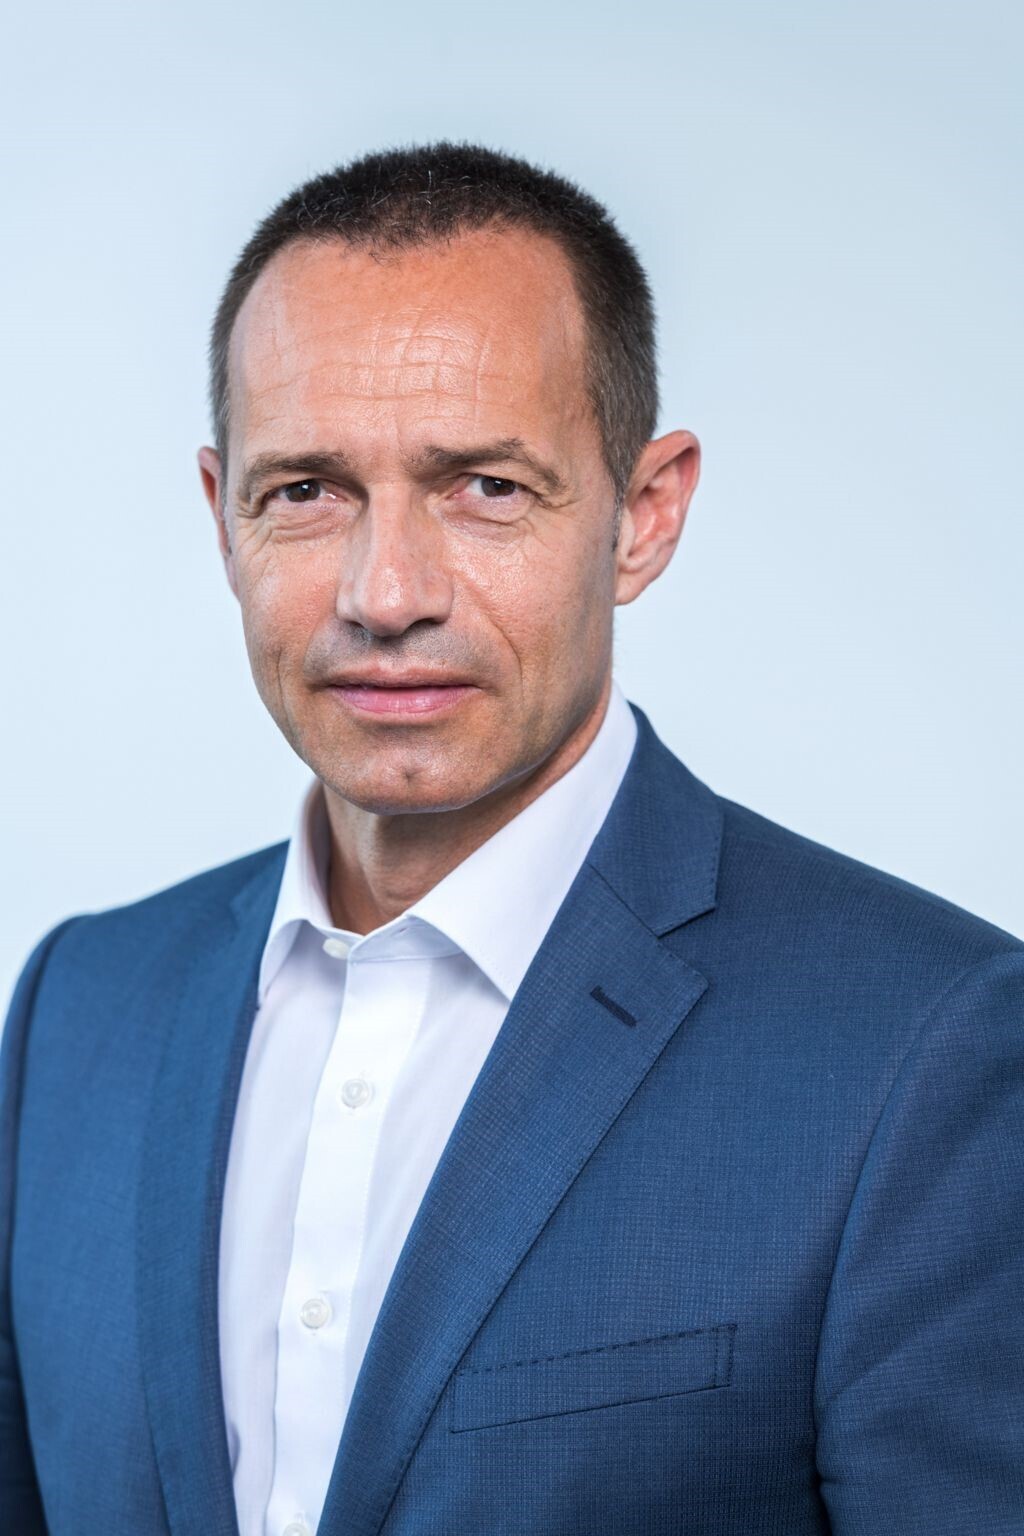 Jürgen Keller ist das neue Vorstandsmitglied bei Avag Holding SE